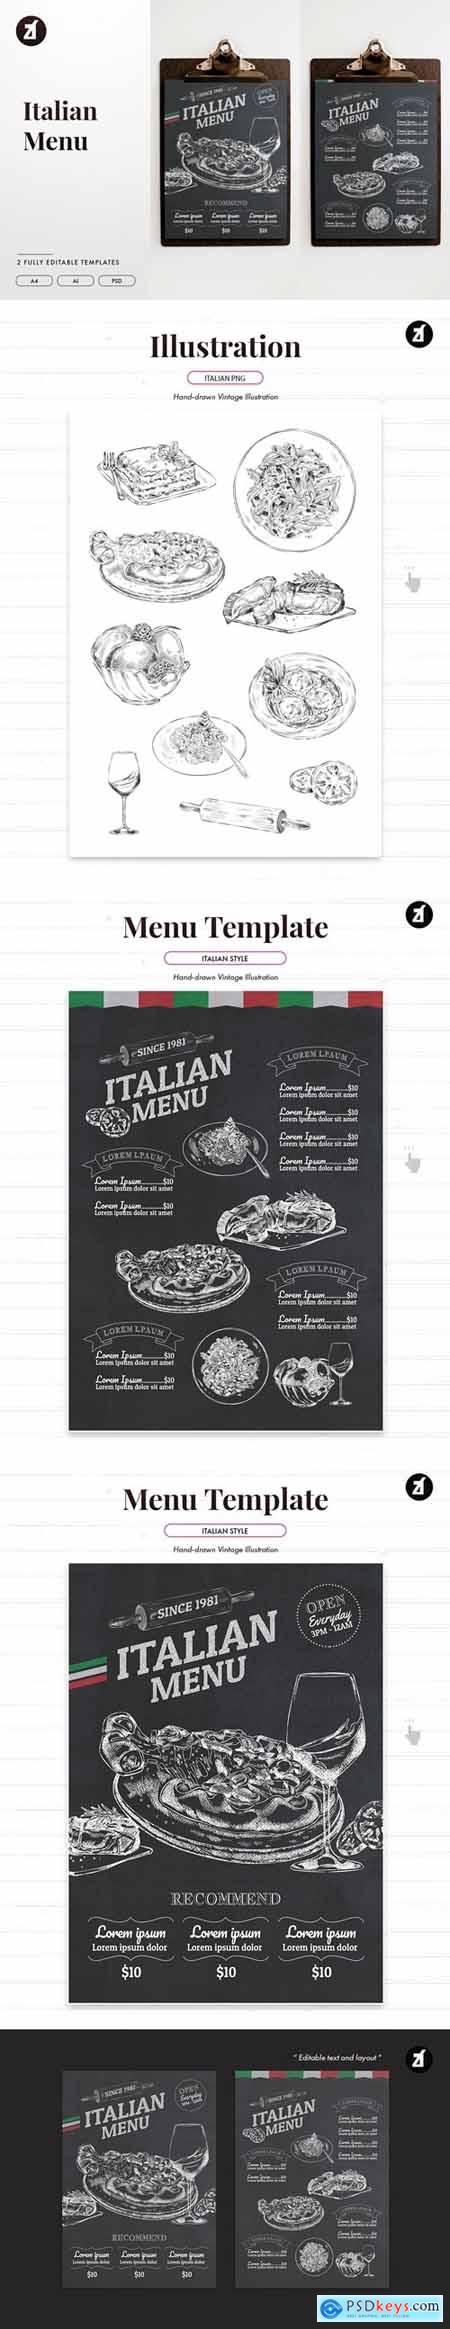 Italian menu template